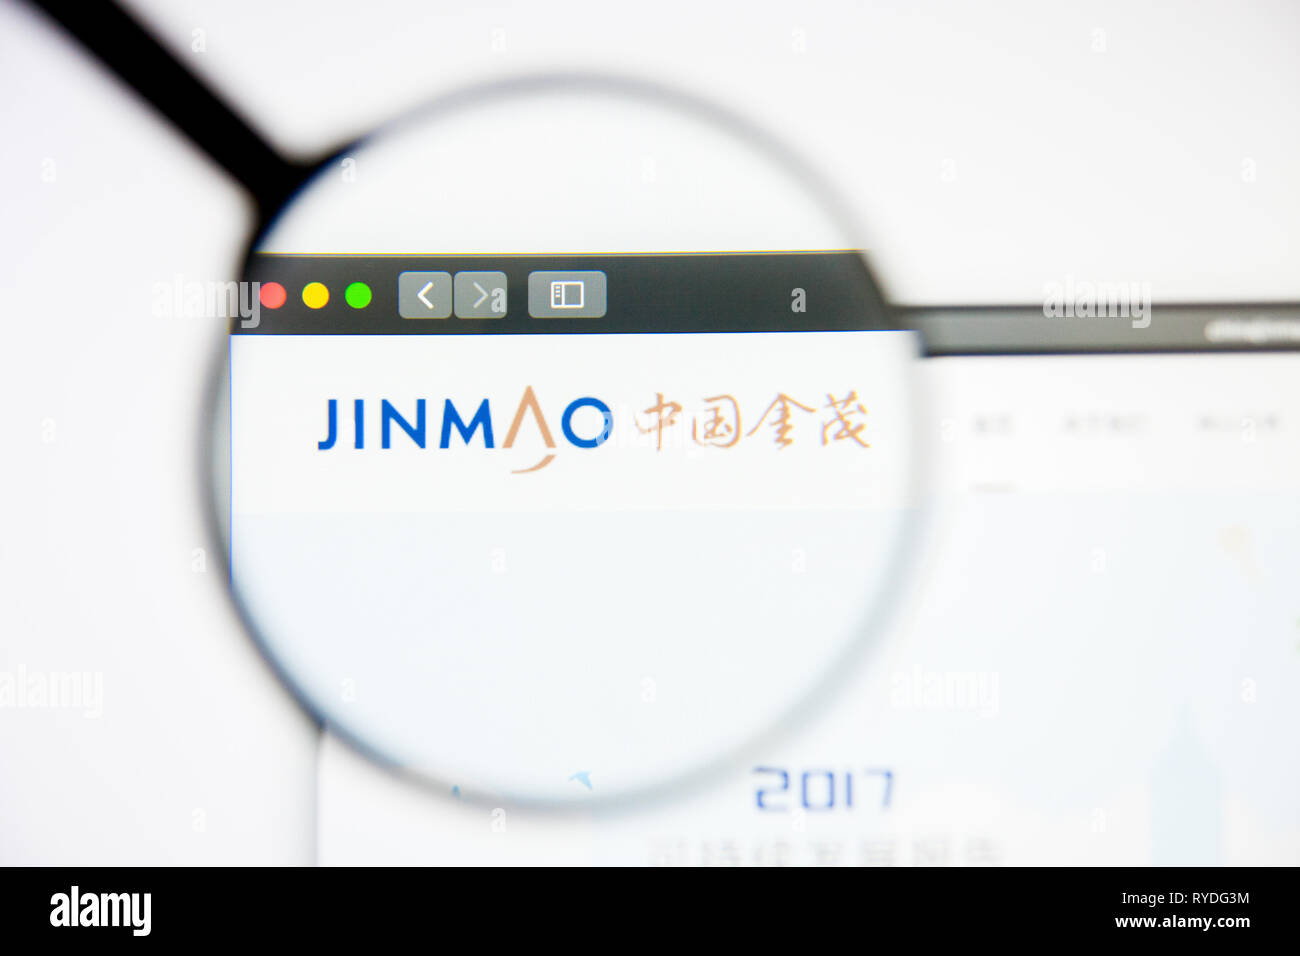 Los Angeles, California, Stati Uniti d'America - 5 Marzo 2019: Cina Jinmao website homepage. Cina logo Jinmao visibile sulla schermata di visualizzazione illustrativa editoriale Foto Stock